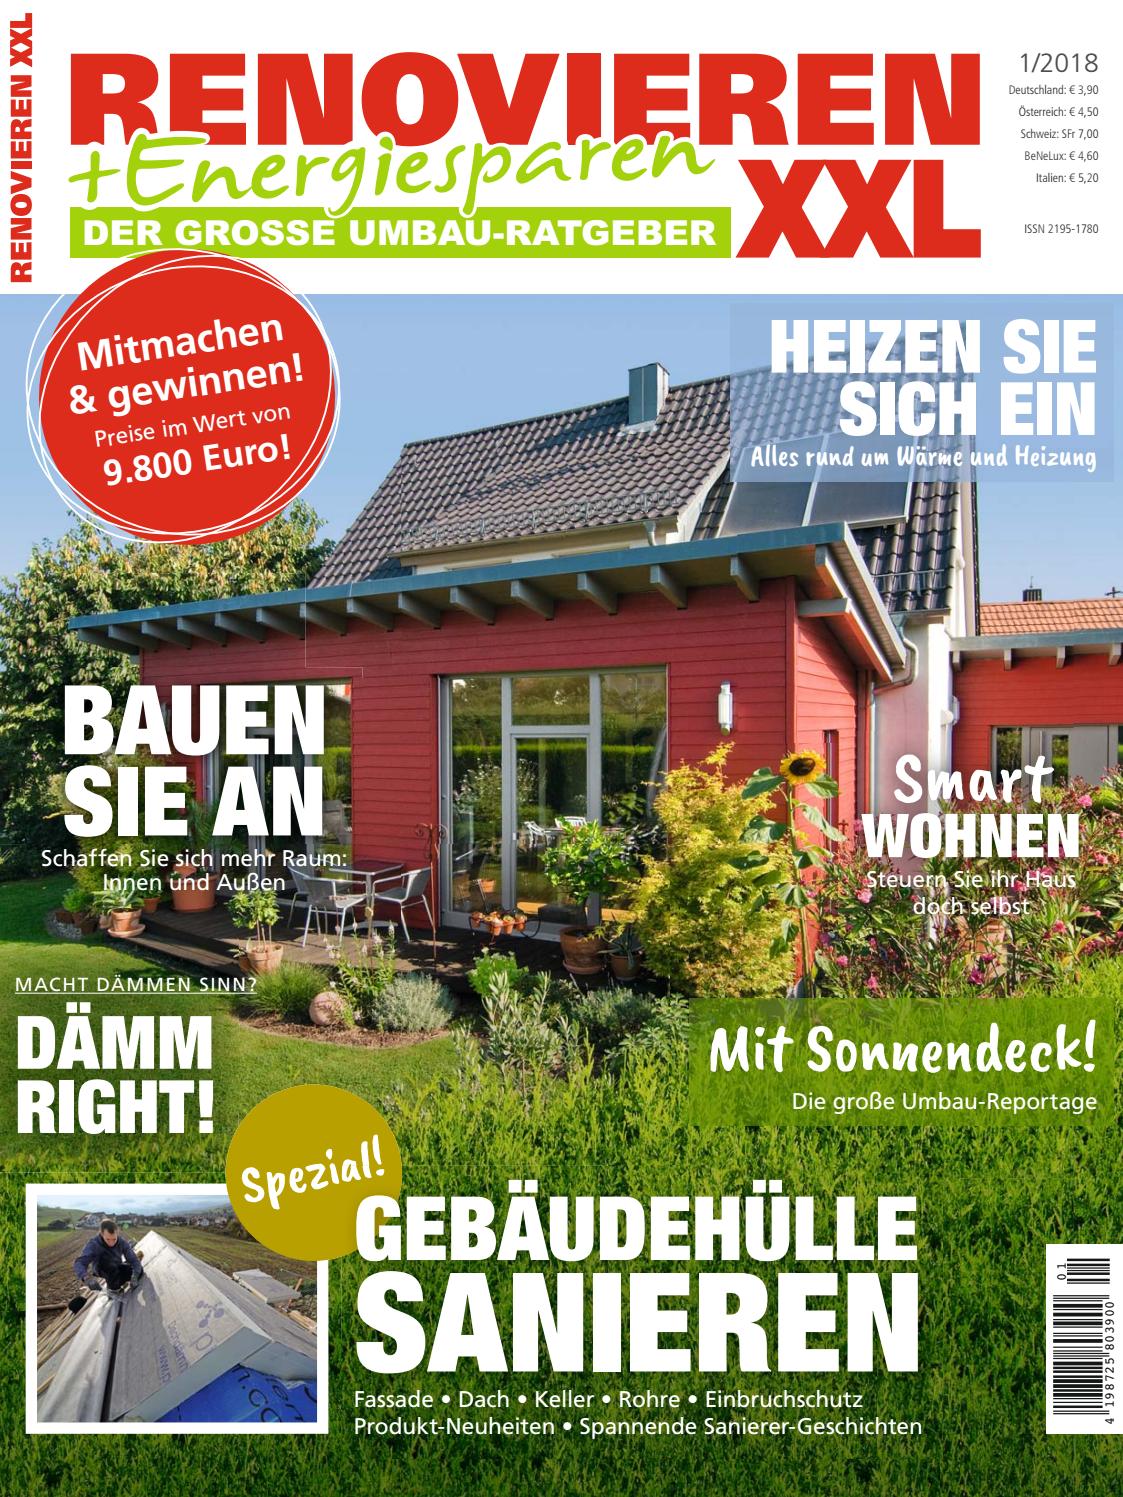 Terrassenwand Gestalten Elegant Renovieren & Energiesparen 1 2018 by Family Home Verlag Gmbh